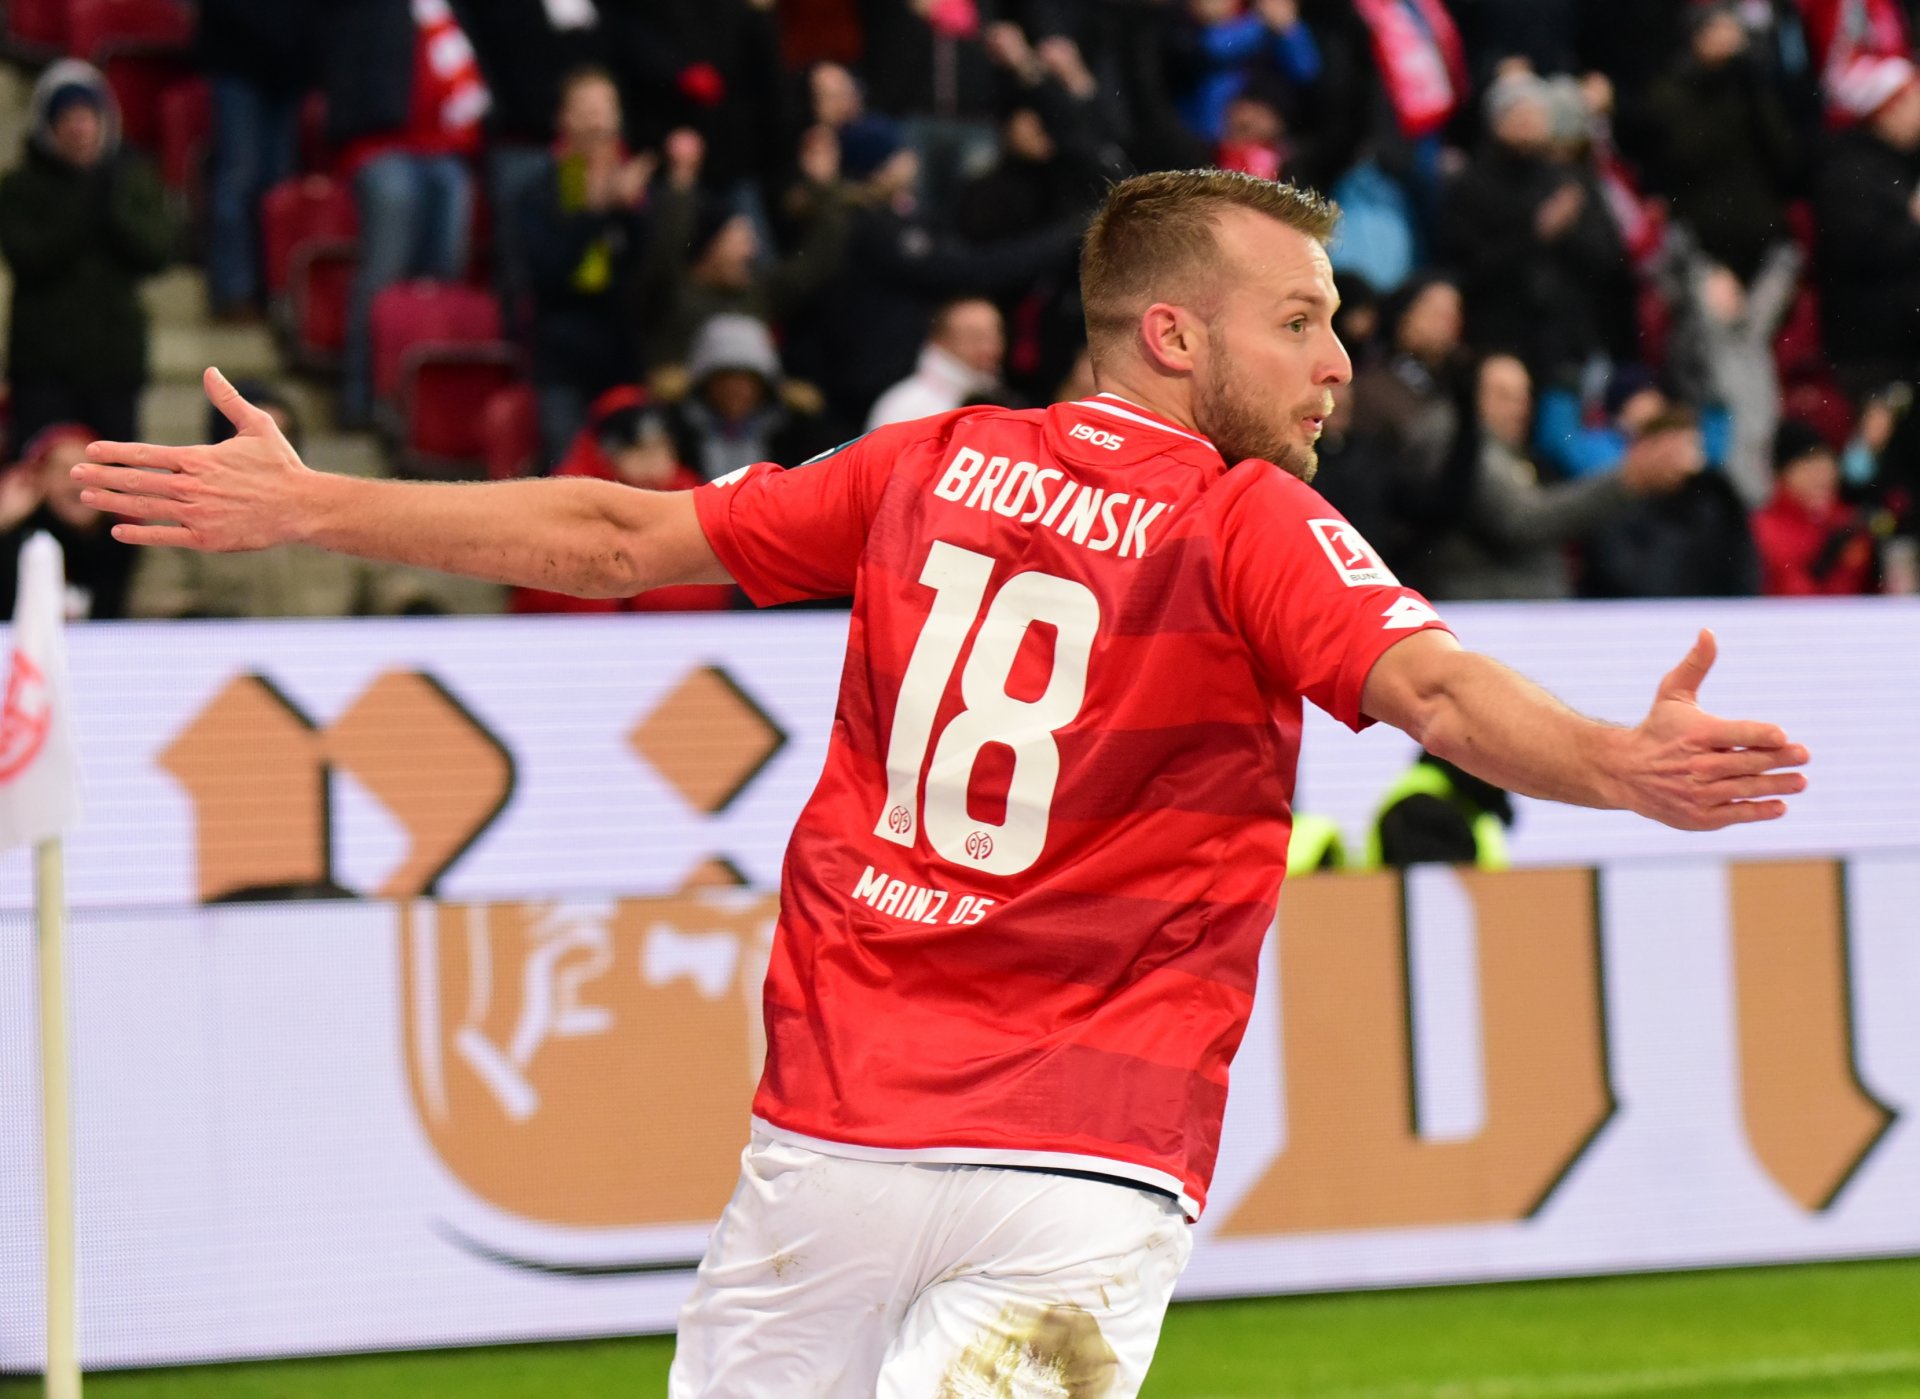 Daniel Brosinski war quasi der Mann des Spiels, weil an beiden Mainzer Toren beteiligt: Das 2:1 bereitete er vor...